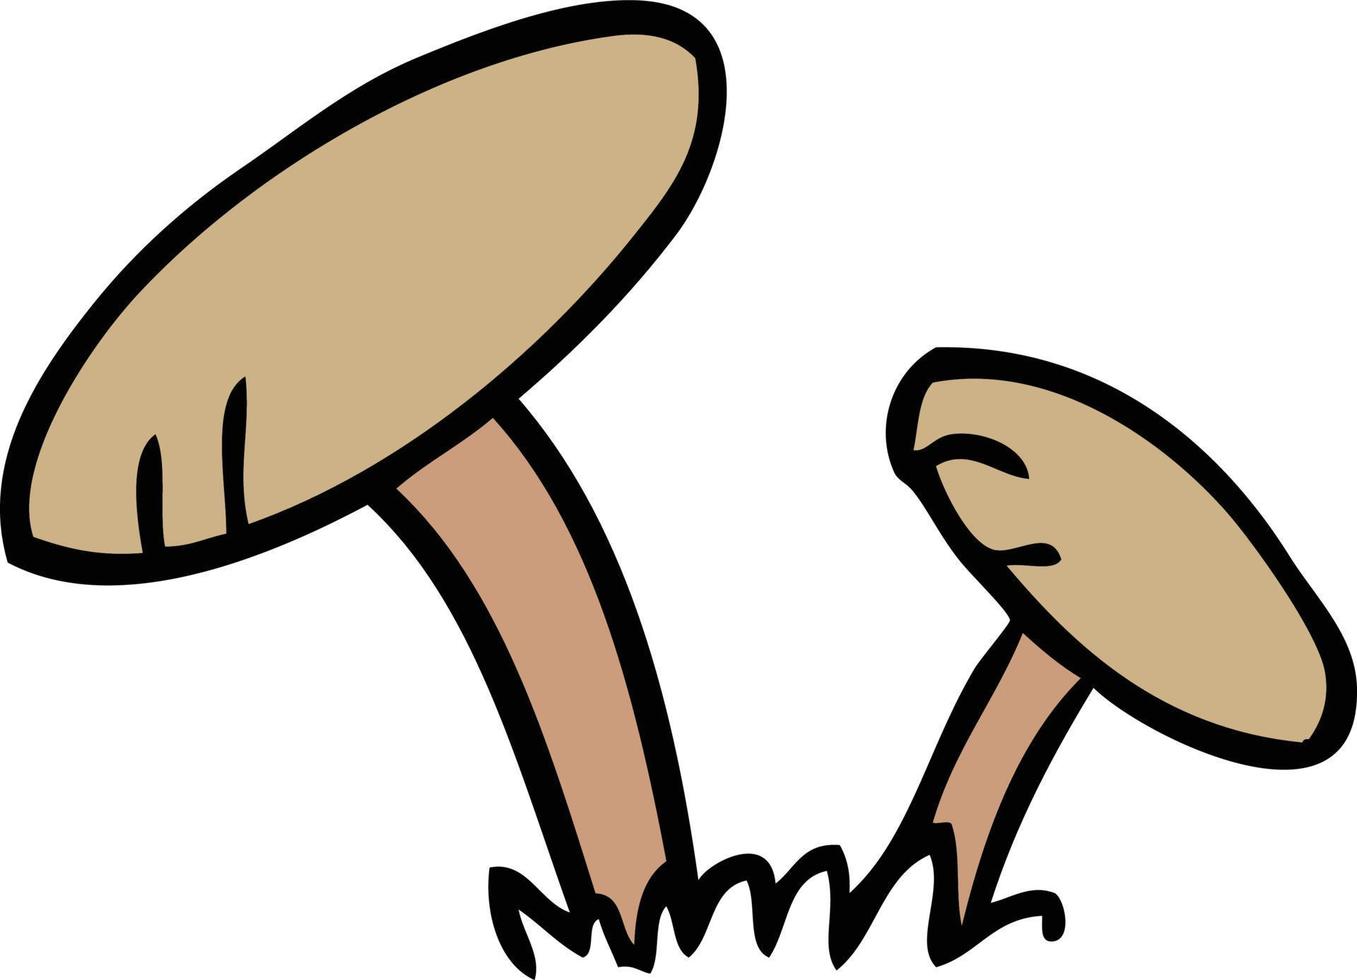 tecknad doodle av några svampar vektor